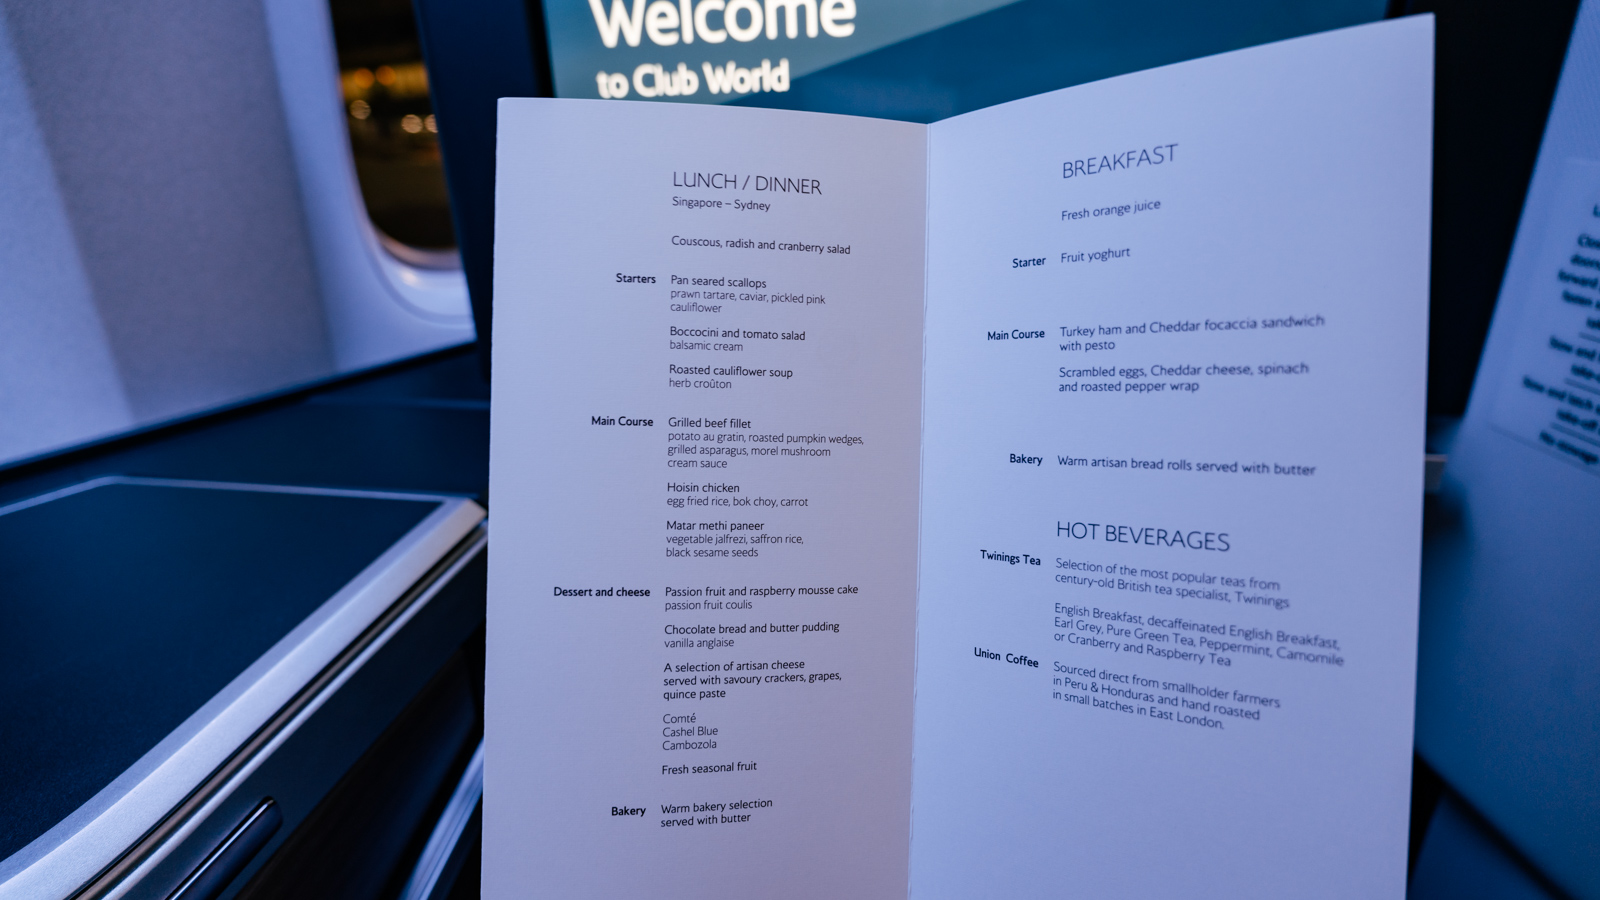 British Airways Club Suites food menu.